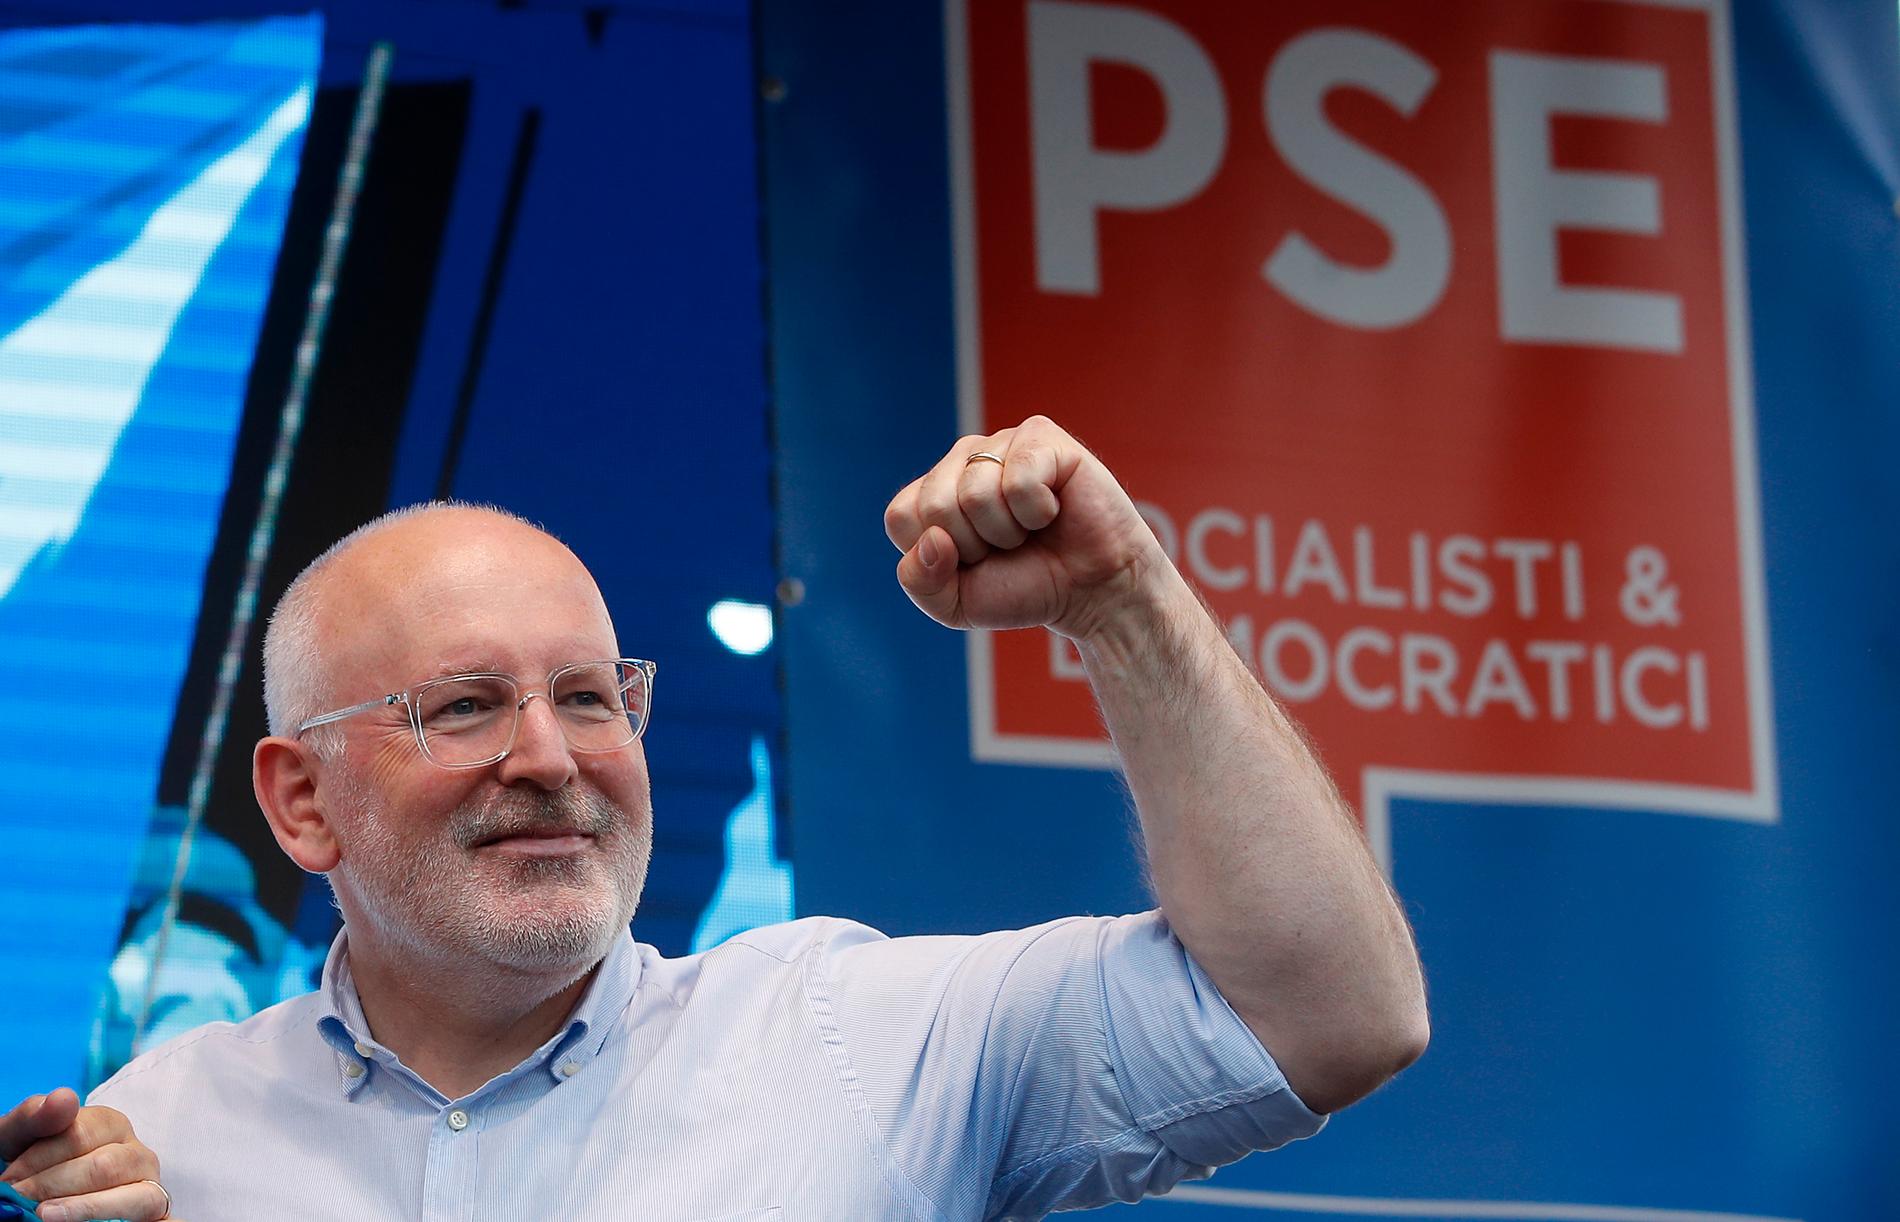 Nederländske socialdemokraten Frans Timmermans hoppas bli EU-kommissionens nya ordförande efter EU-valet. Arkivfoto.